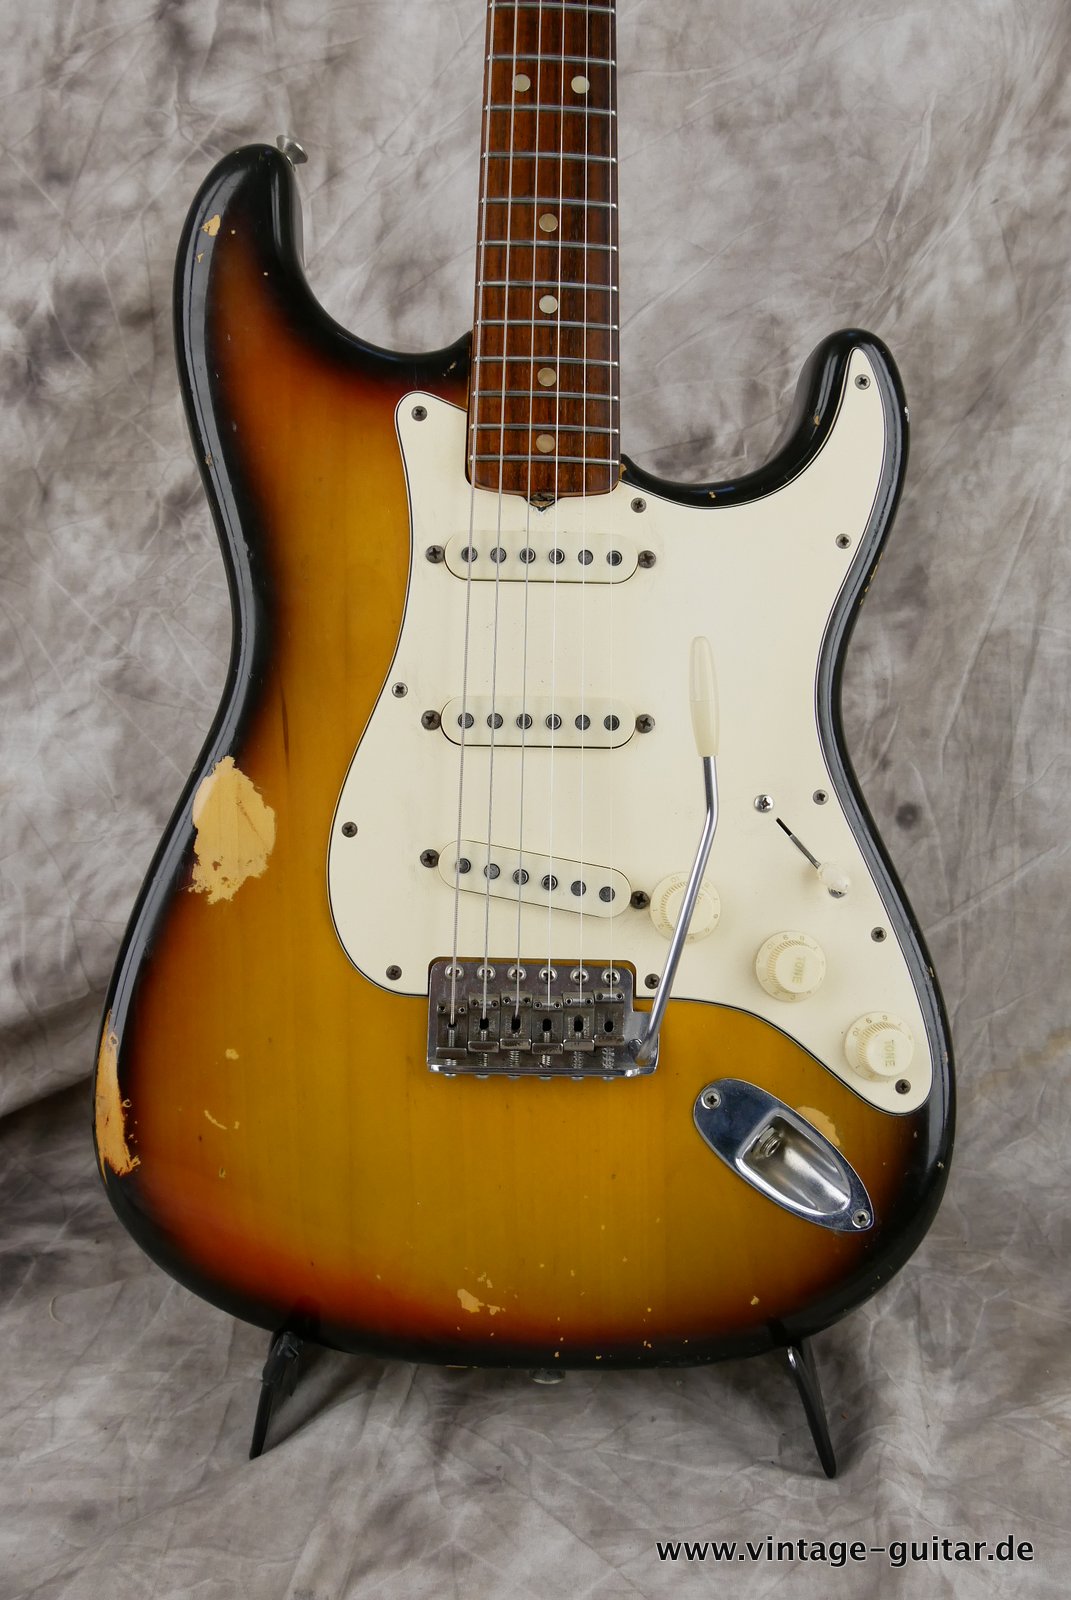 Fender-Stratocaster-1972-sunburst-4-hole-002.JPG